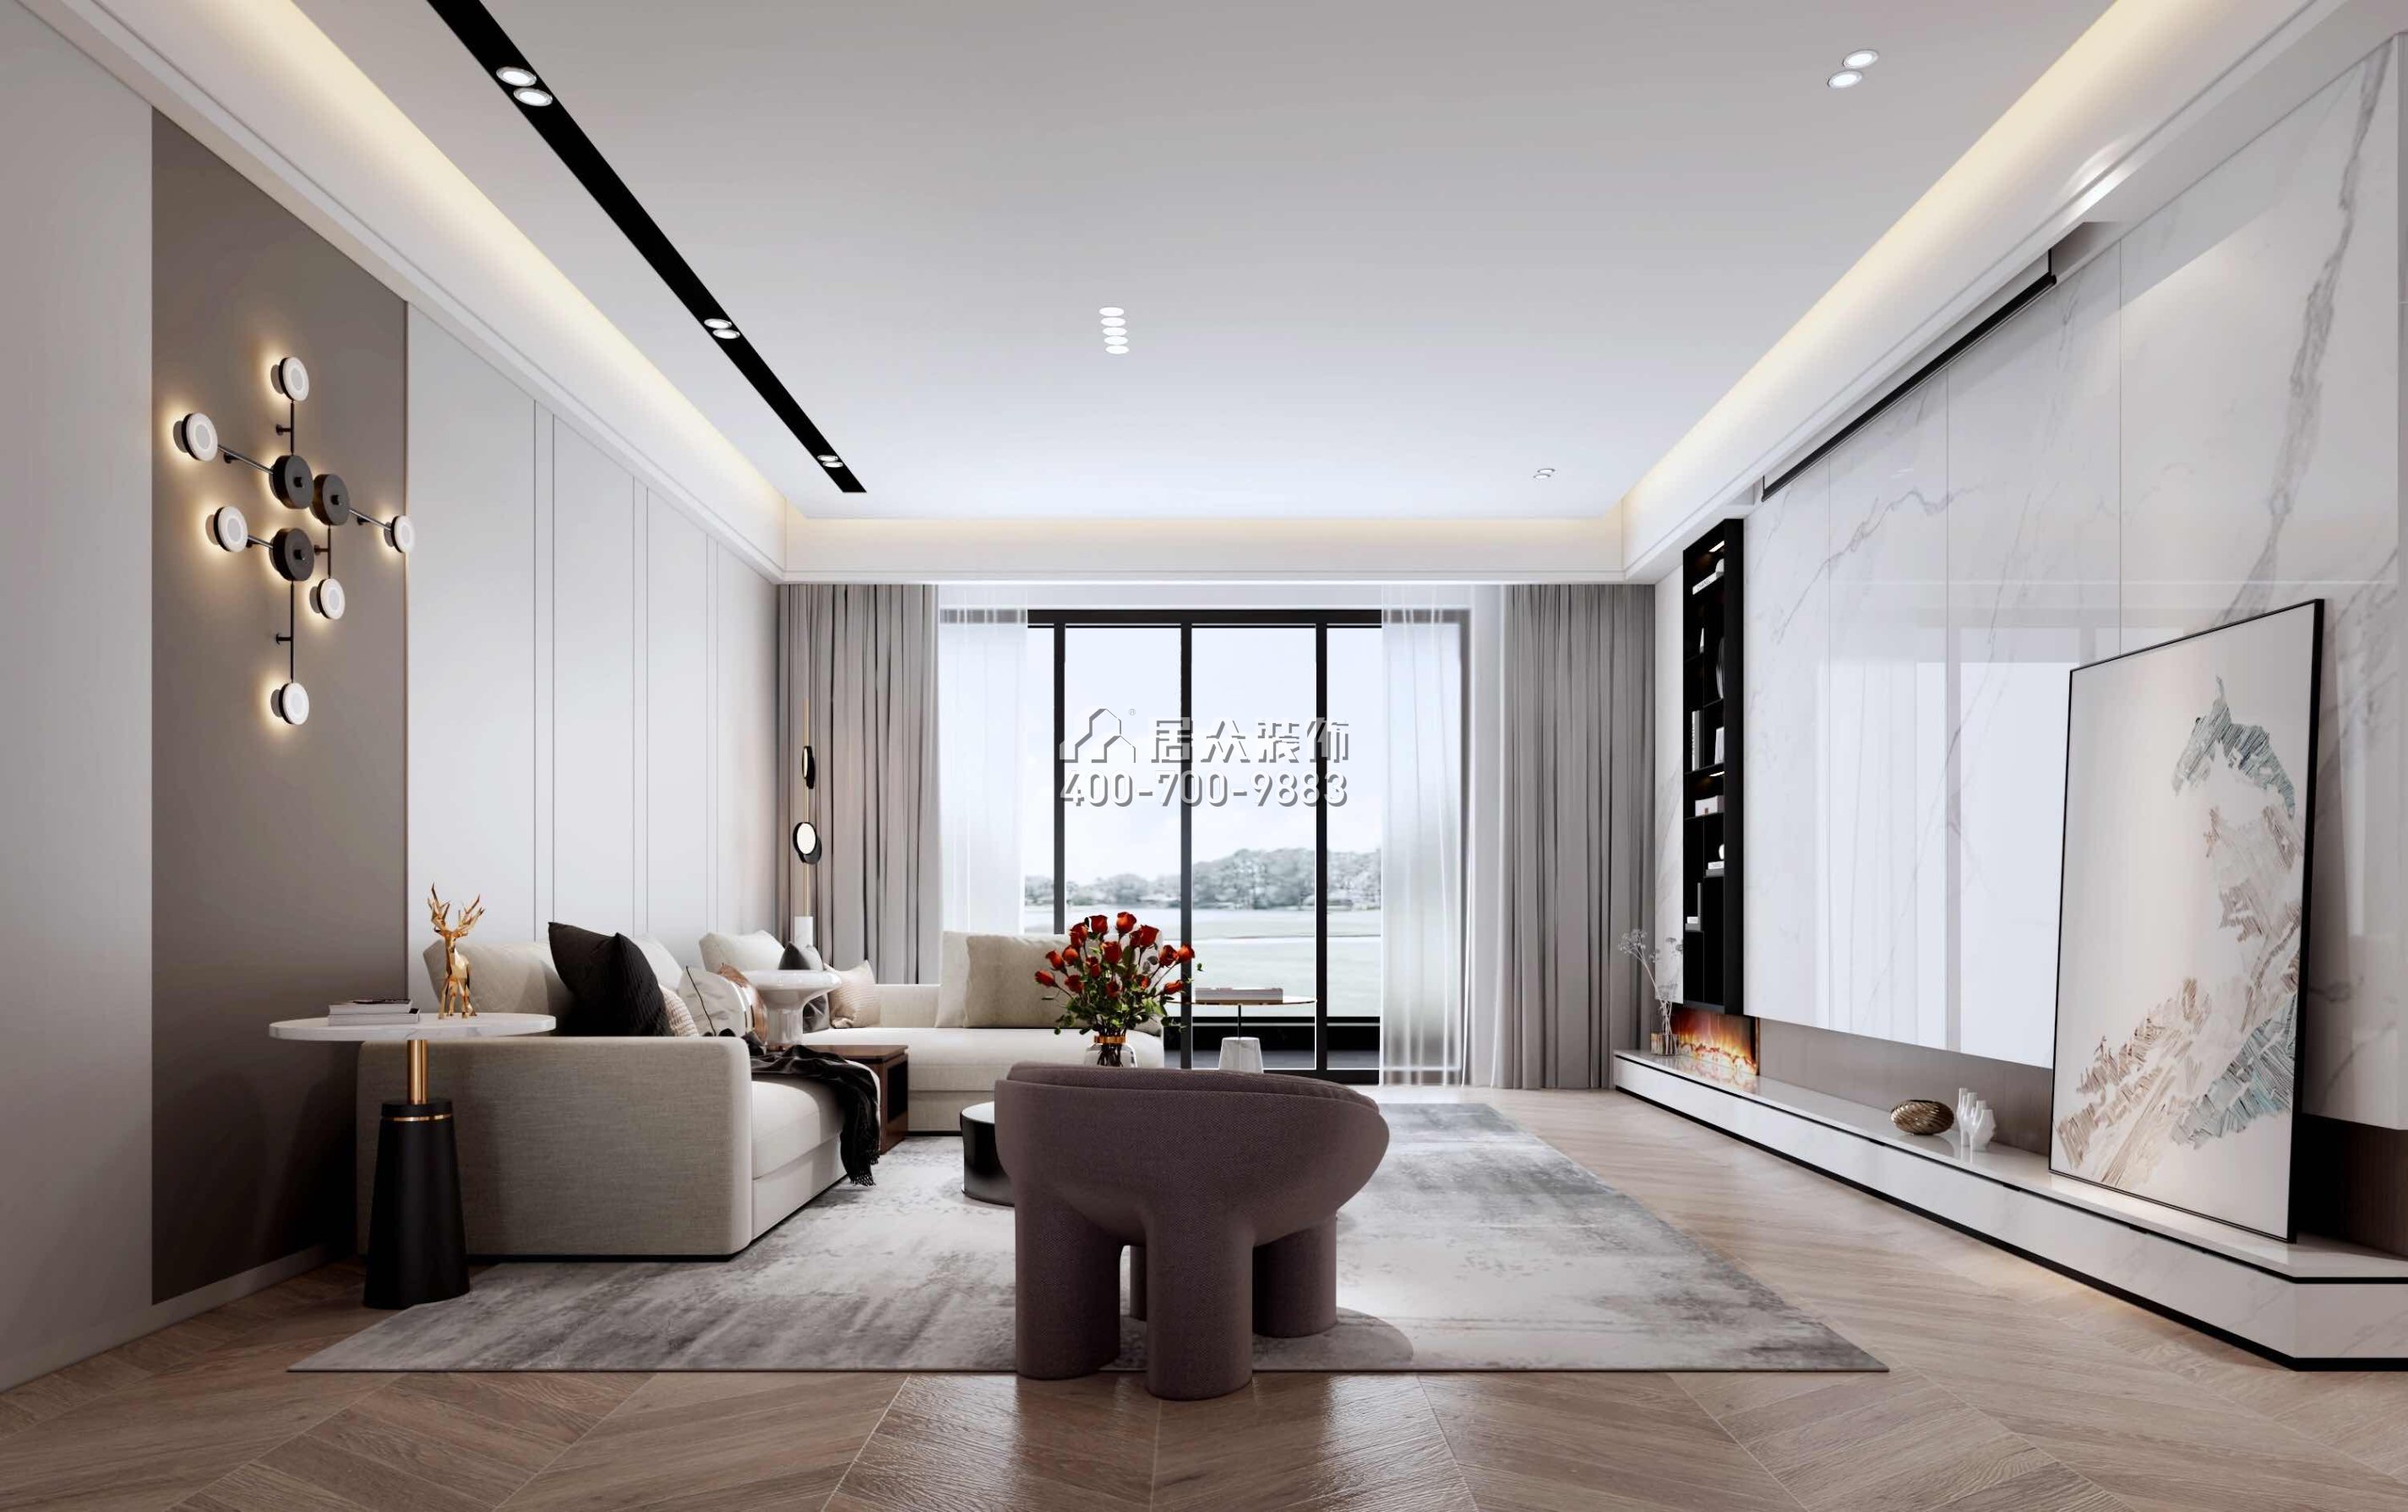 錦繡山河268平方米現代簡約風格平層戶型客廳裝修效果圖